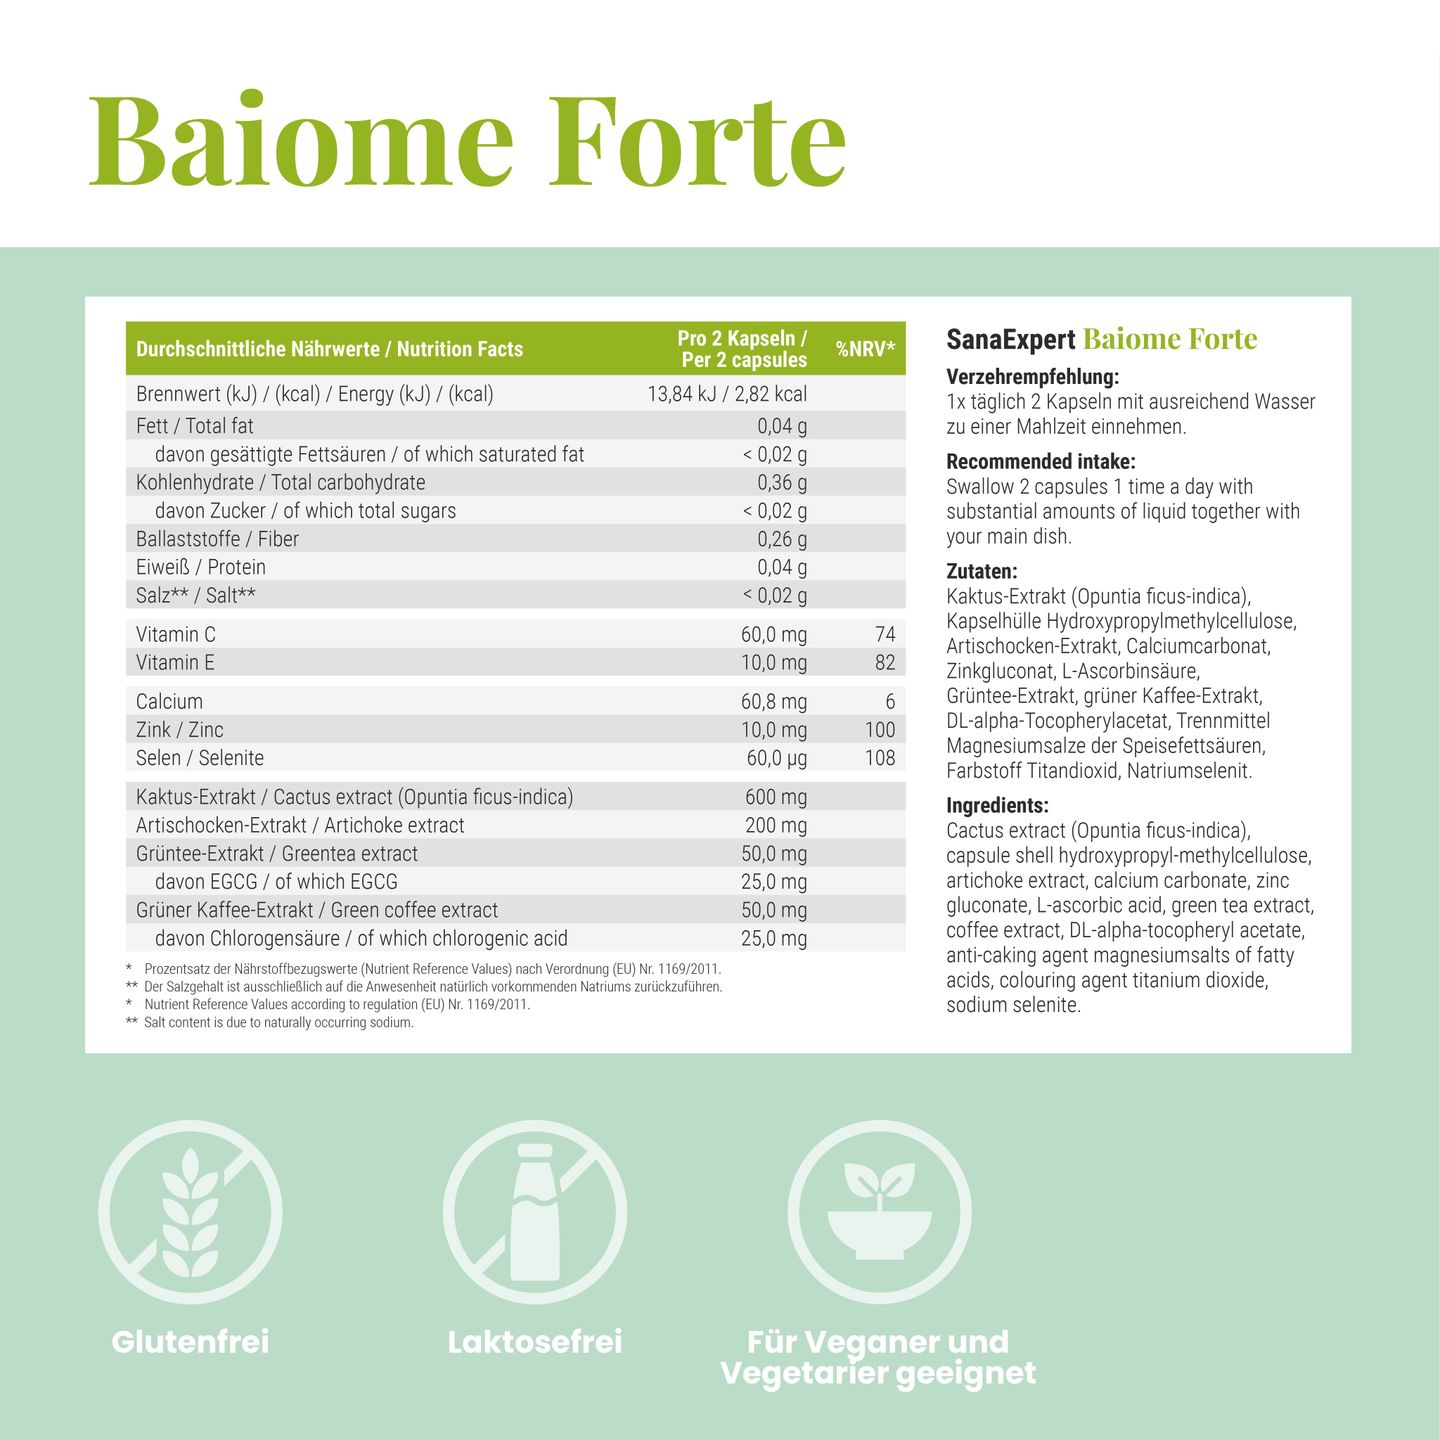 Informationsblatt über SanaExpert Baime Forte, listet die glutenfreien und laktosefreien Inhaltsstoffe und die Verzehrempfehlung auf.